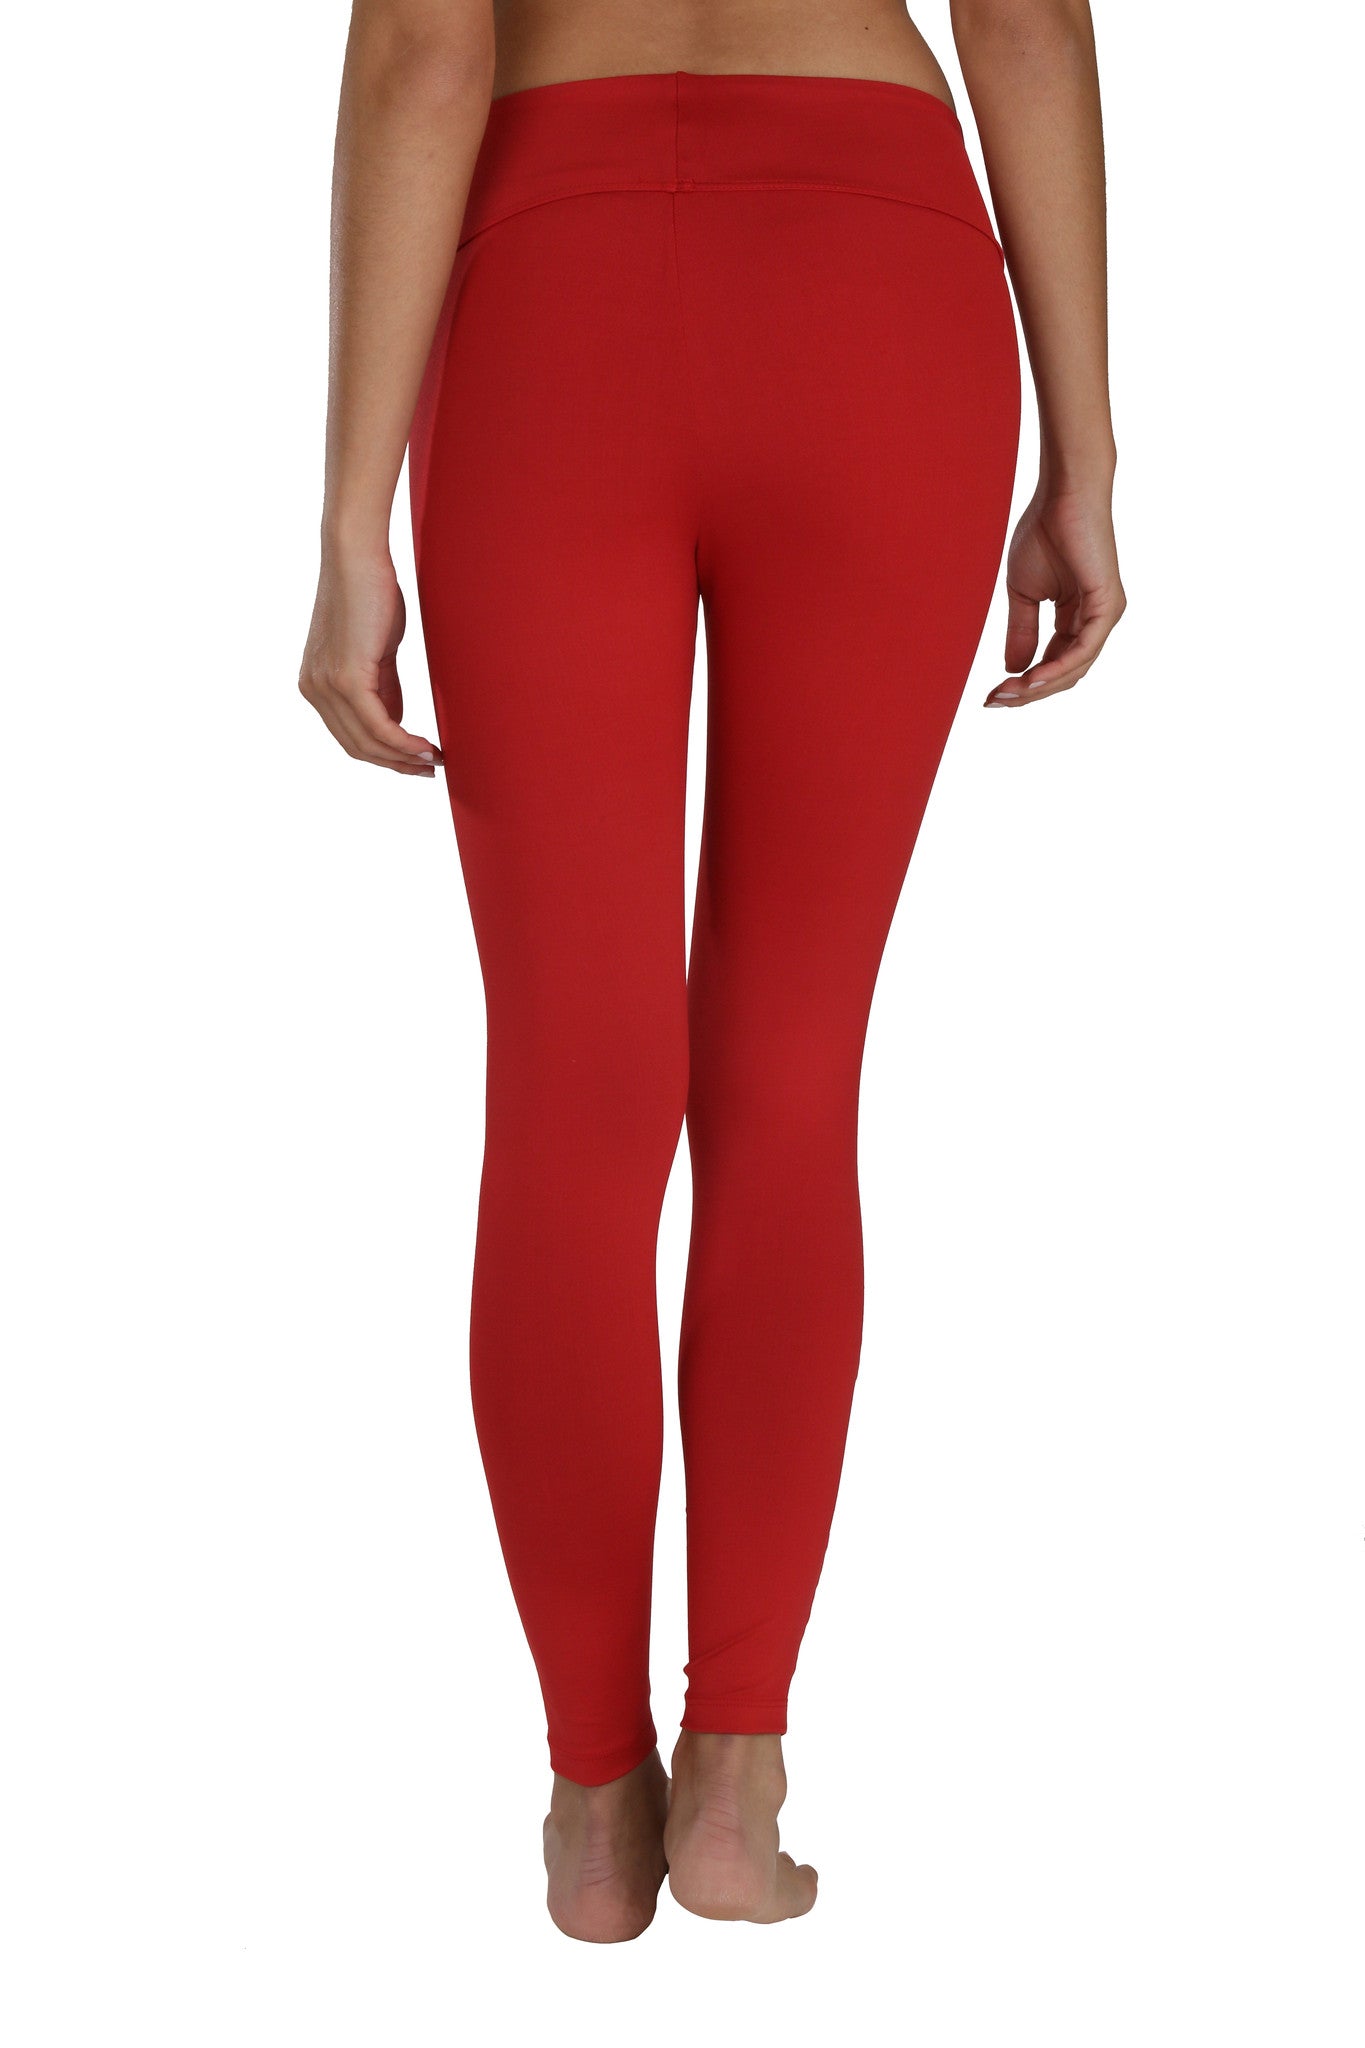 Moto Mesh Legging - Red | Sadhana Clothing